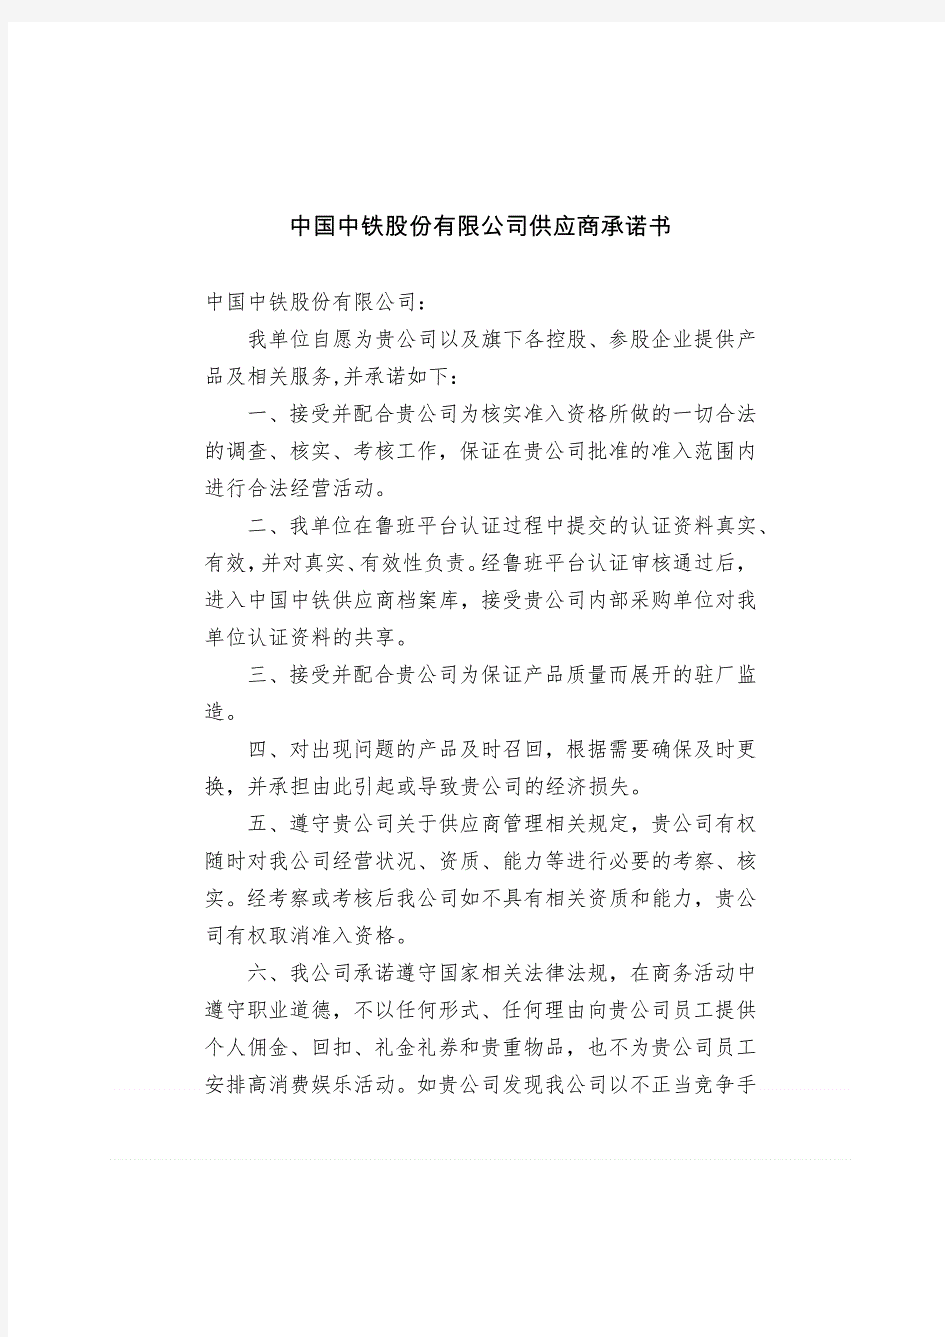 中国中铁股份有限公司供应商承诺书